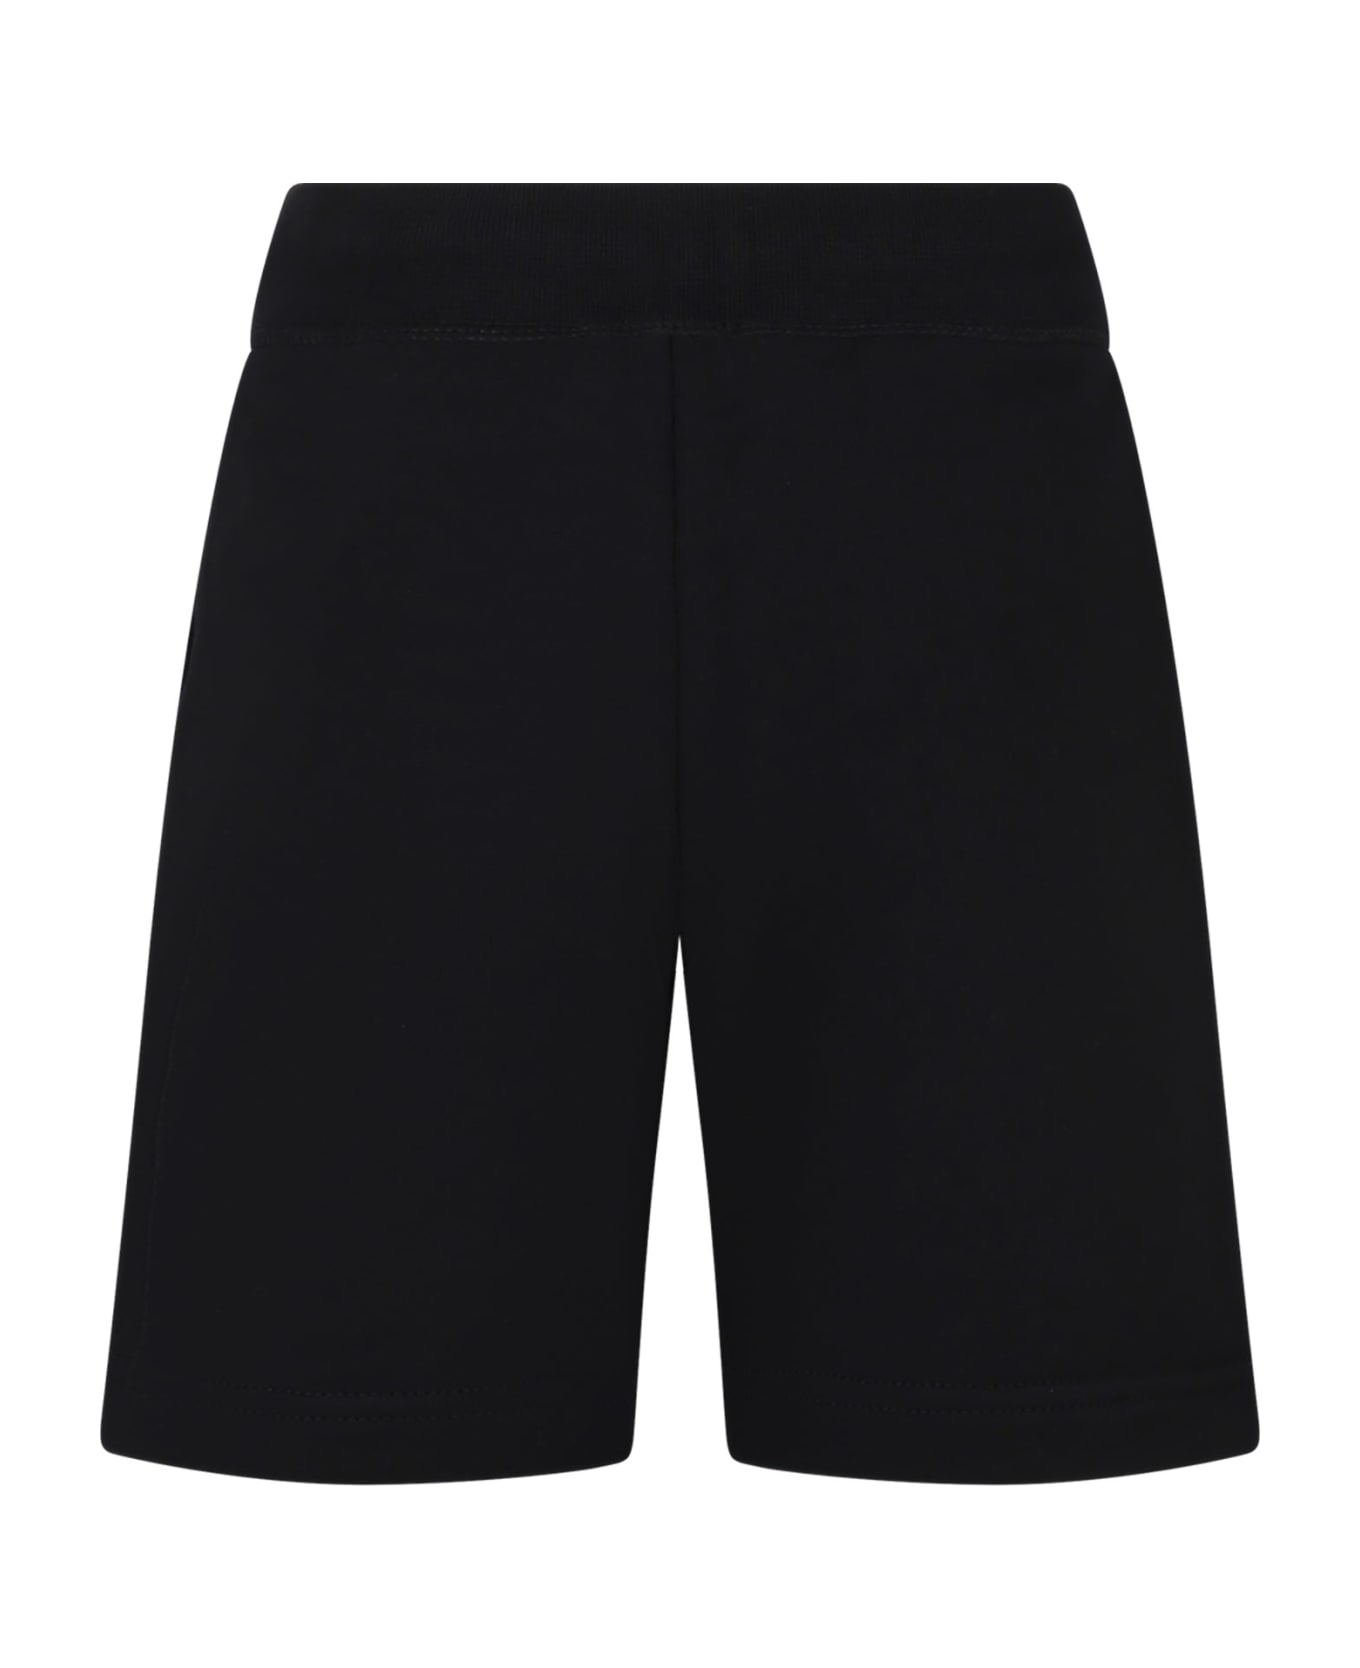 Dsquared2 Black Sport Shorts For Boy - Black